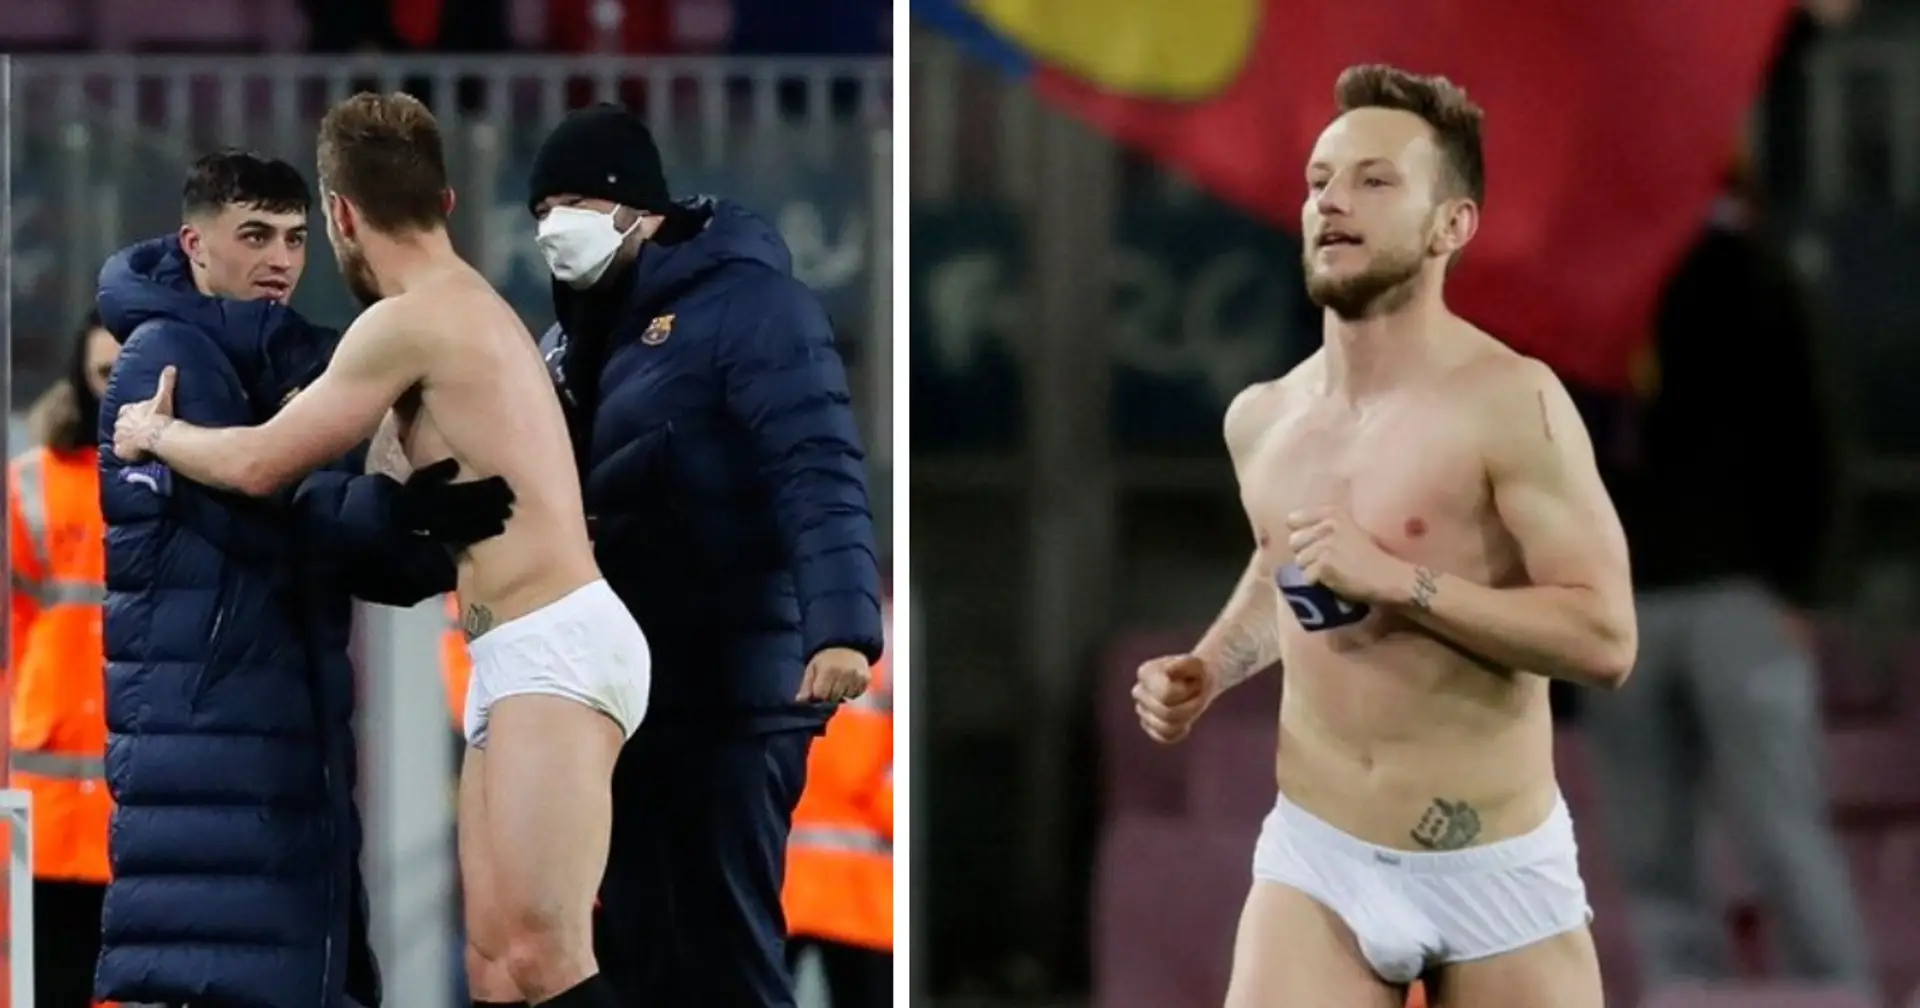 Repéré: Rakitic se retrouve en sous-vêtements uniquement alors qu'il donne un maillot et un short aux fans